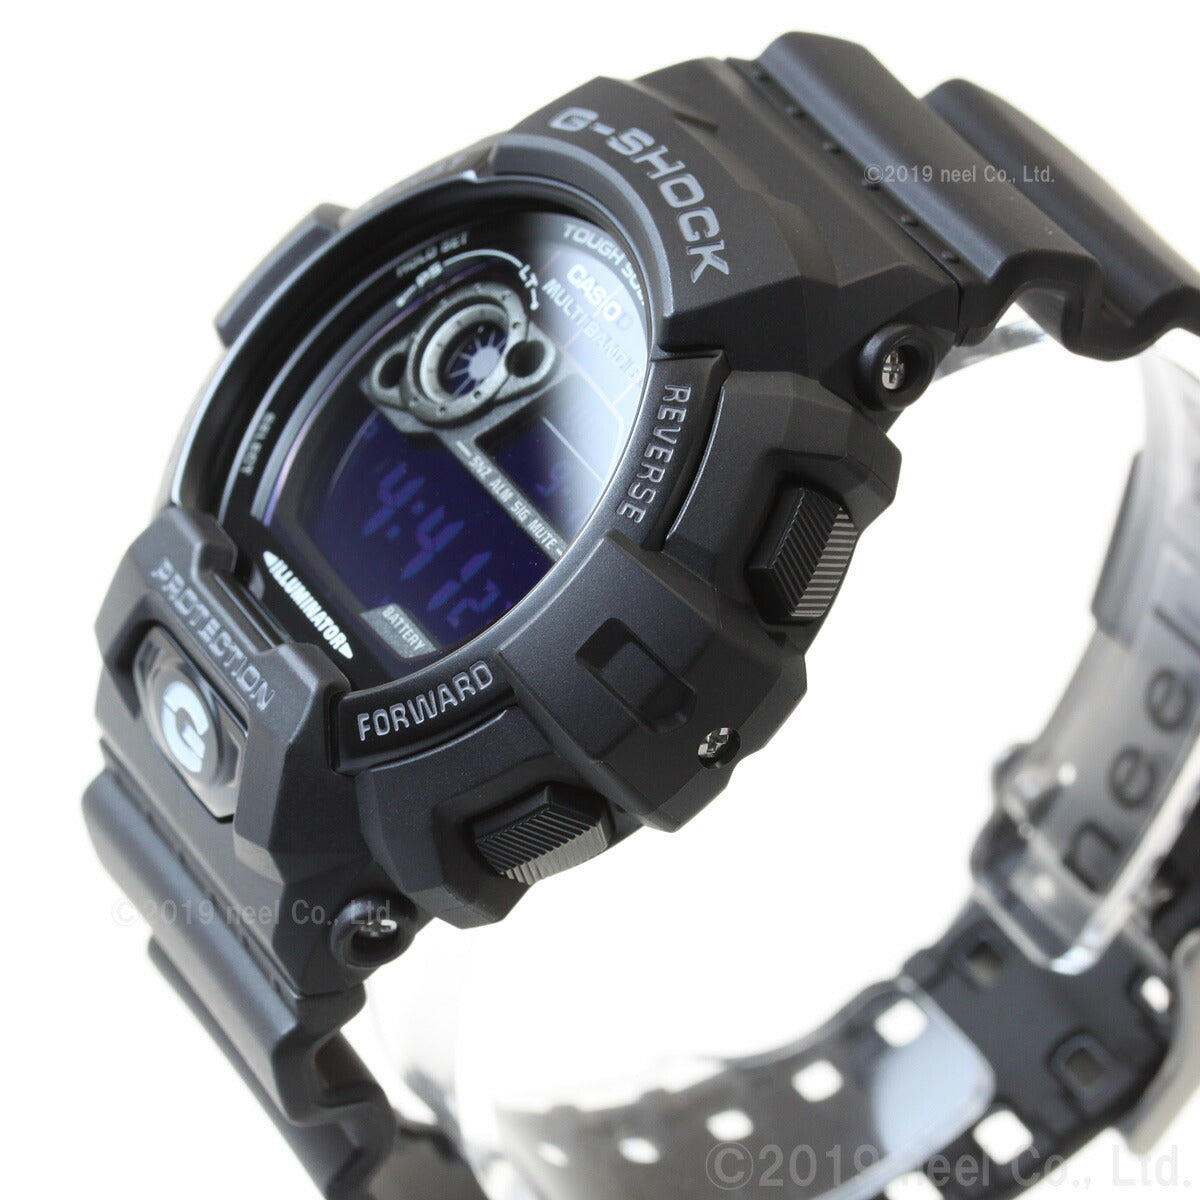 カシオ Gショック G-SHOCK 電波 ソーラー 腕時計 メンズ タフソーラー GW-8900A-1JF【カシオ Gショック】【正規品】【送料無料】